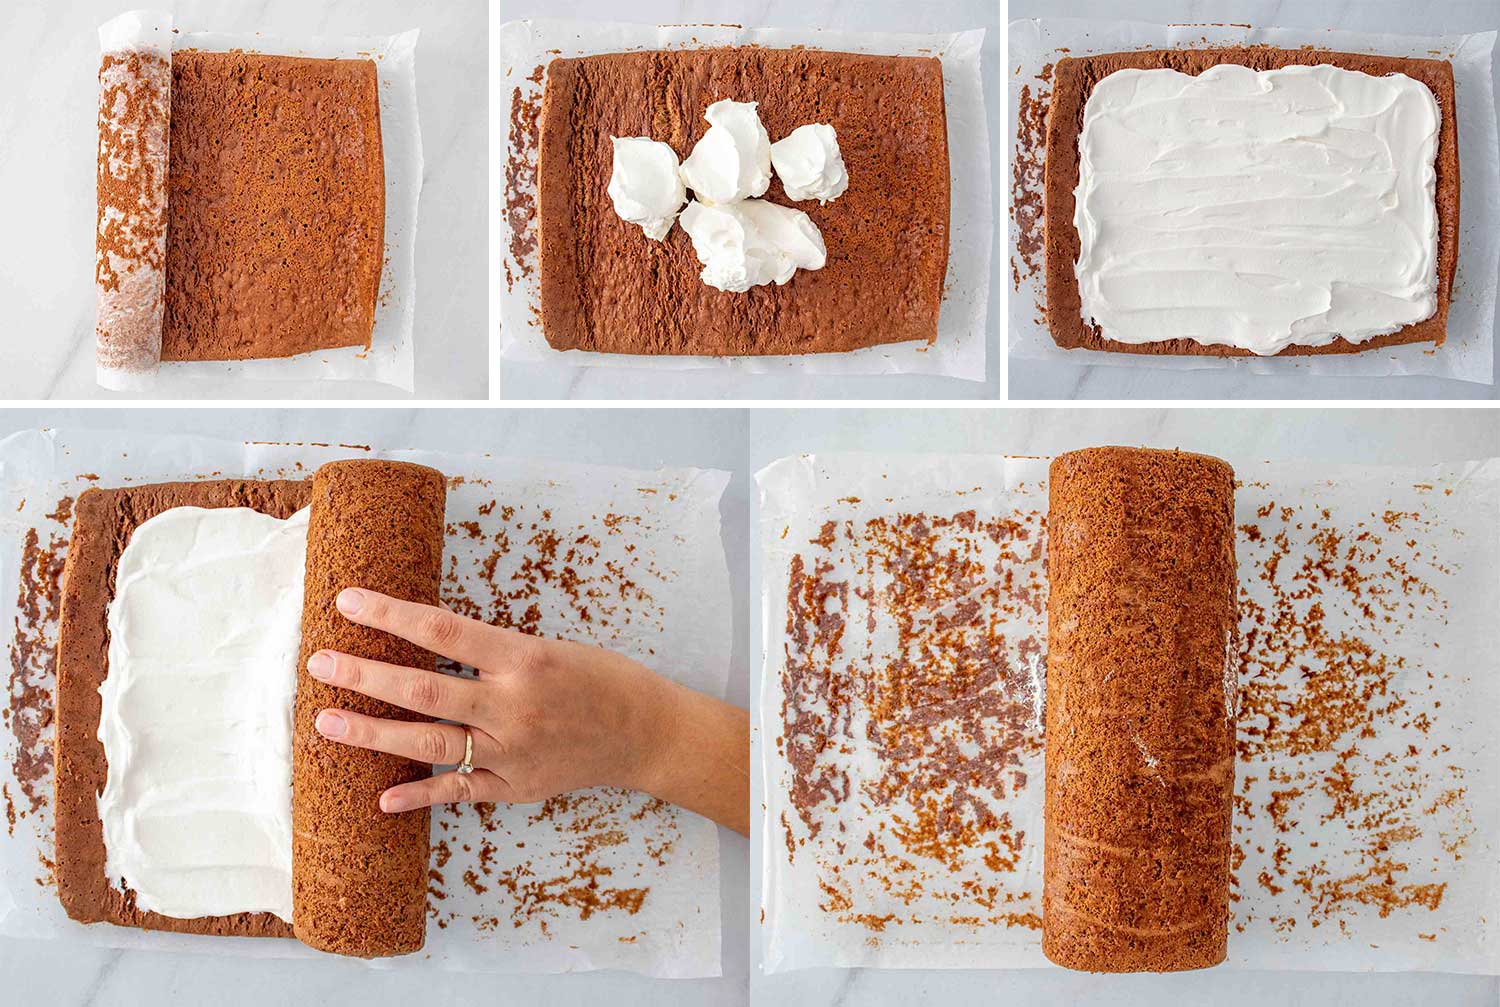 process shots showing how to make buche de noel (yule log cake).